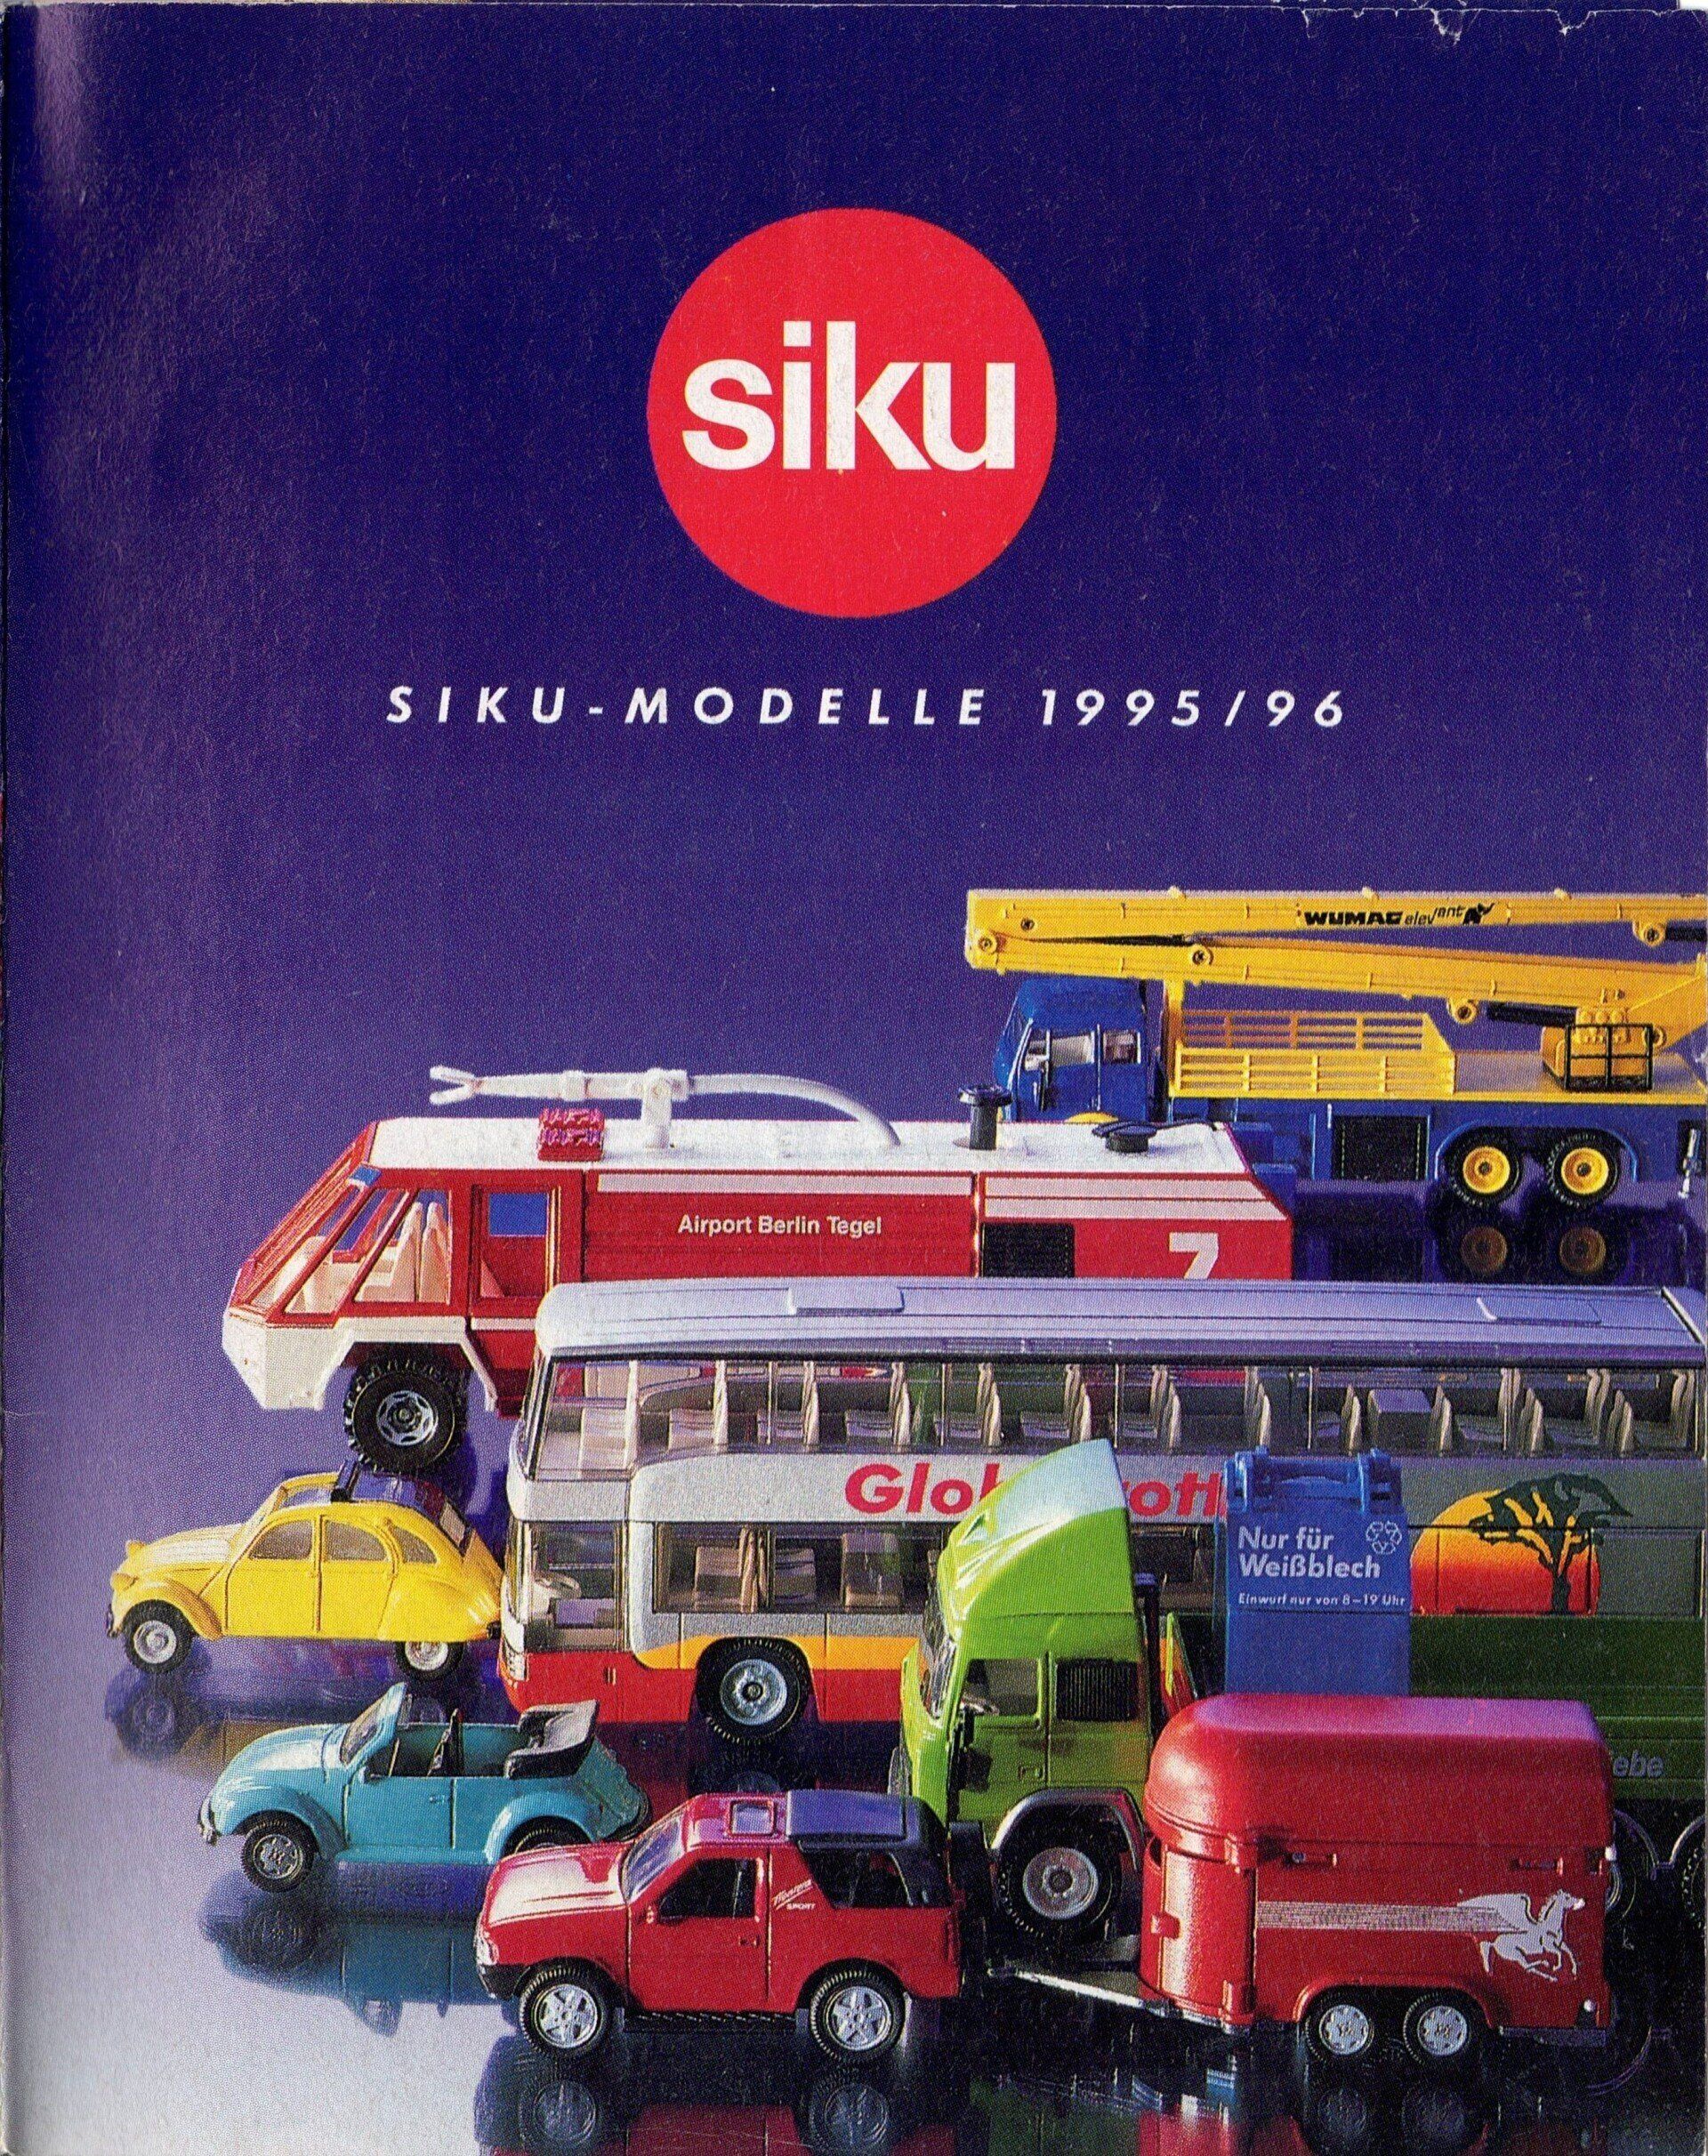 Siku Catalogue 1995-96